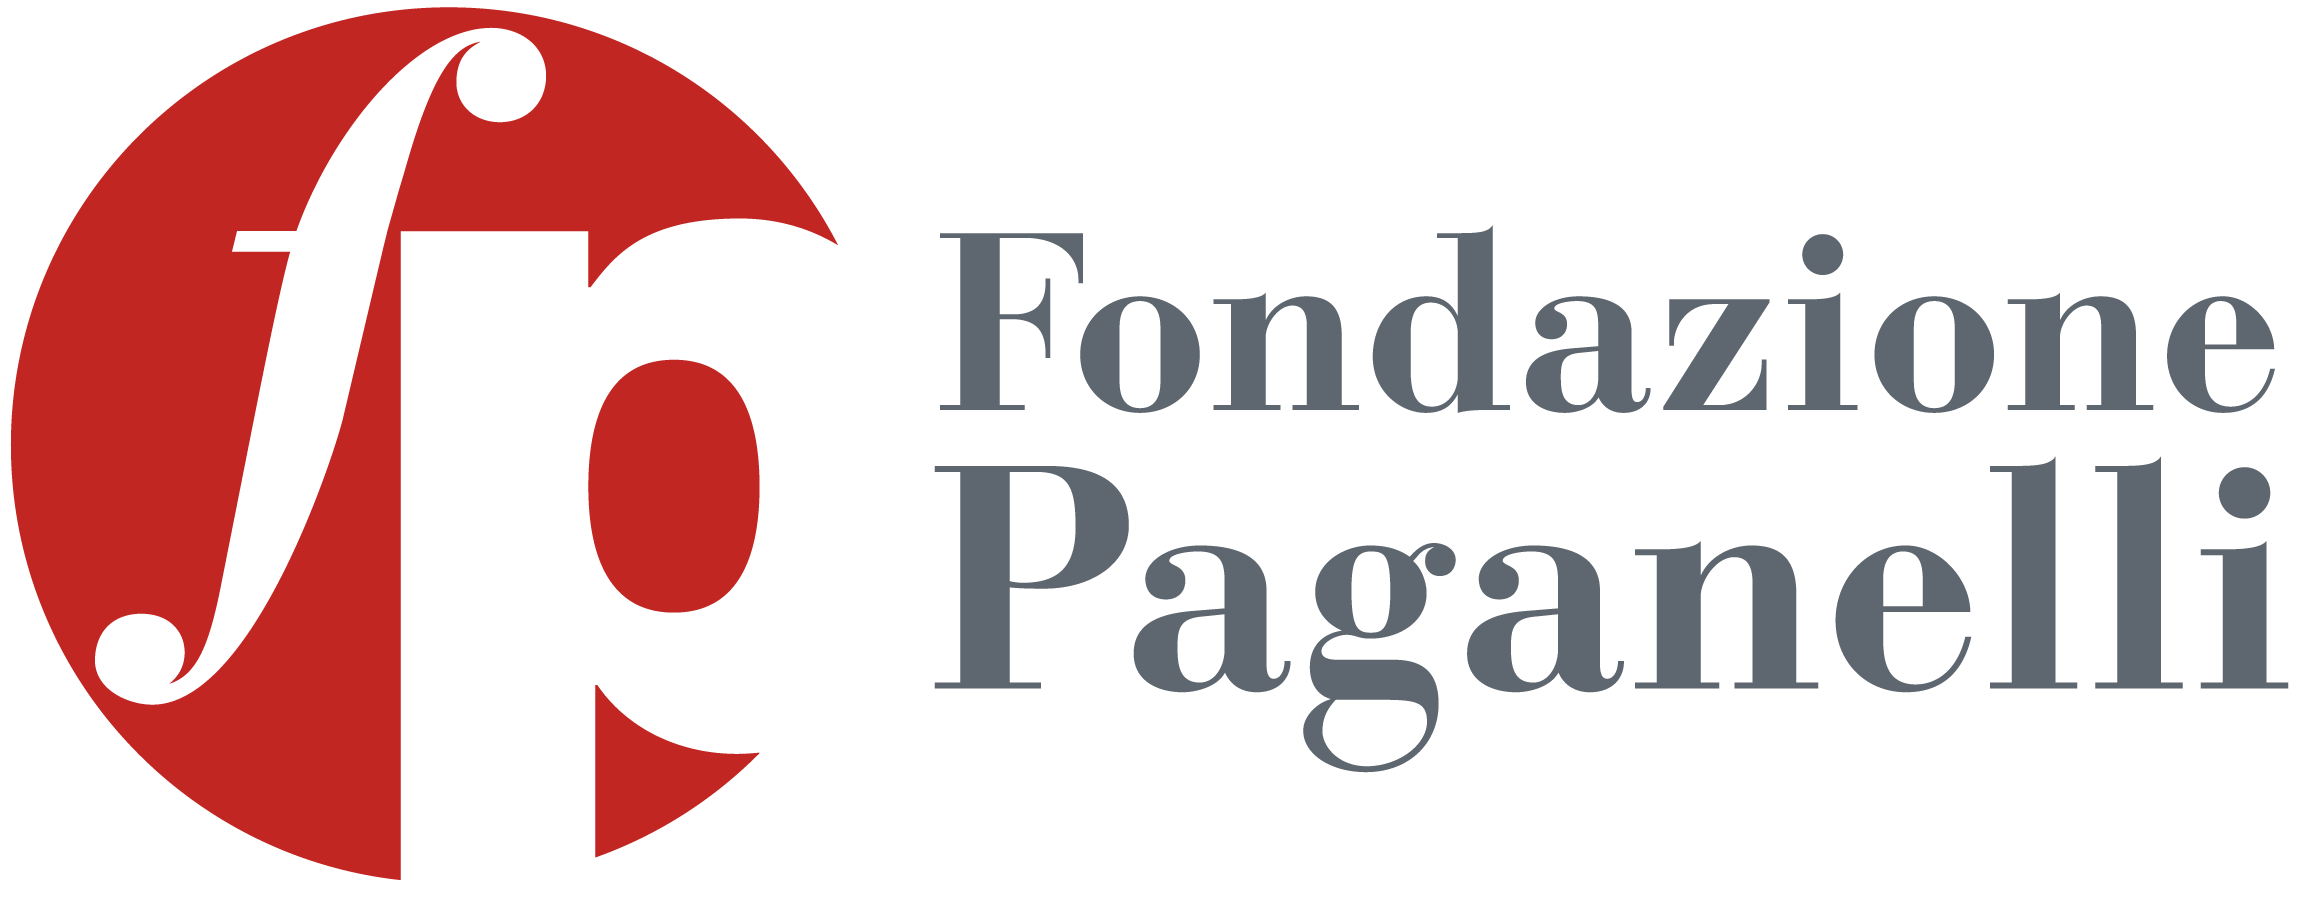 Fondazione Paganelli